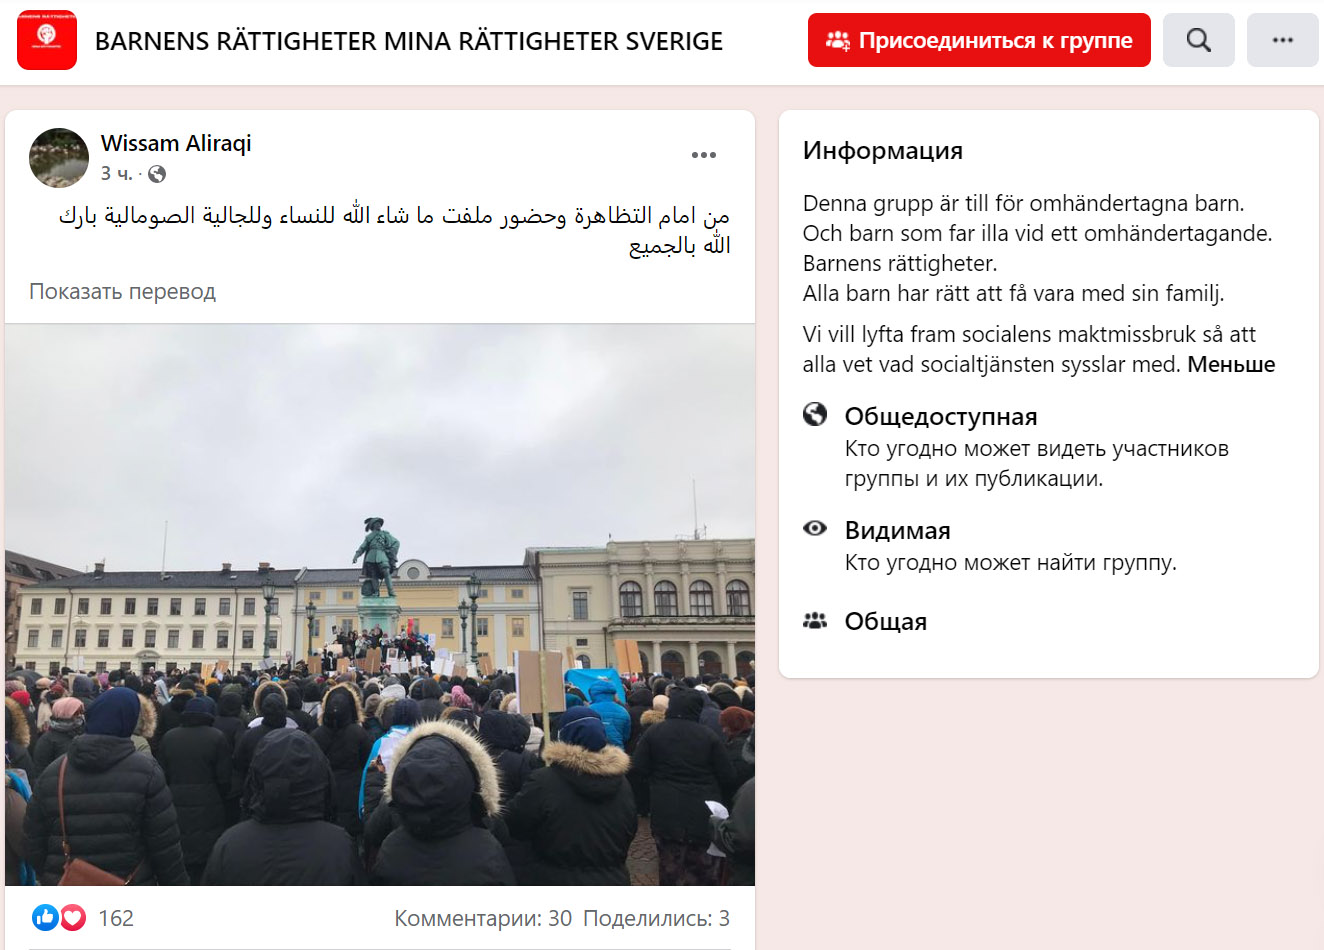 Акция протеста на площади Густава Адольфа в Гётеборге против действий социальных служб в отношении детей.13.02.2022